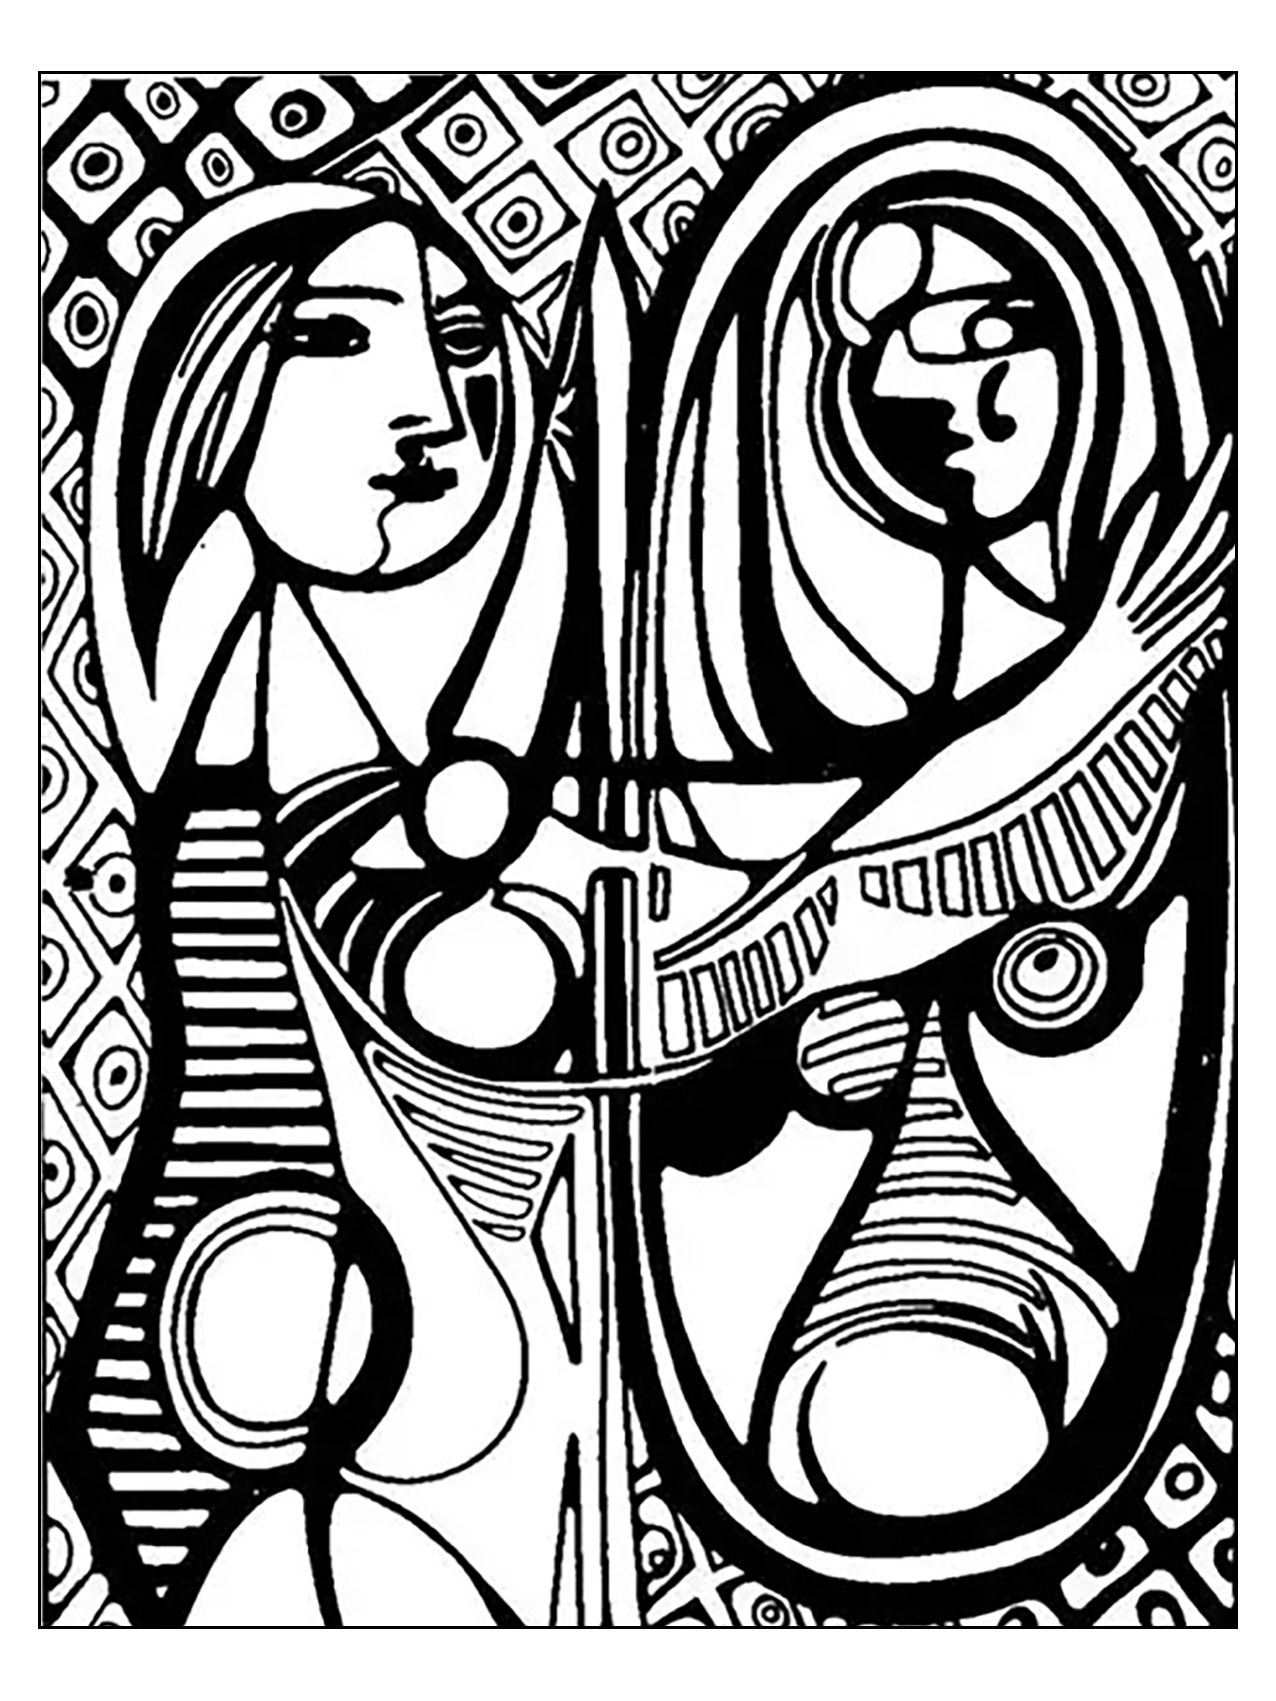 Página para colorir inspirada em 'Rapariga diante de um espelho' de Picasso (1932)